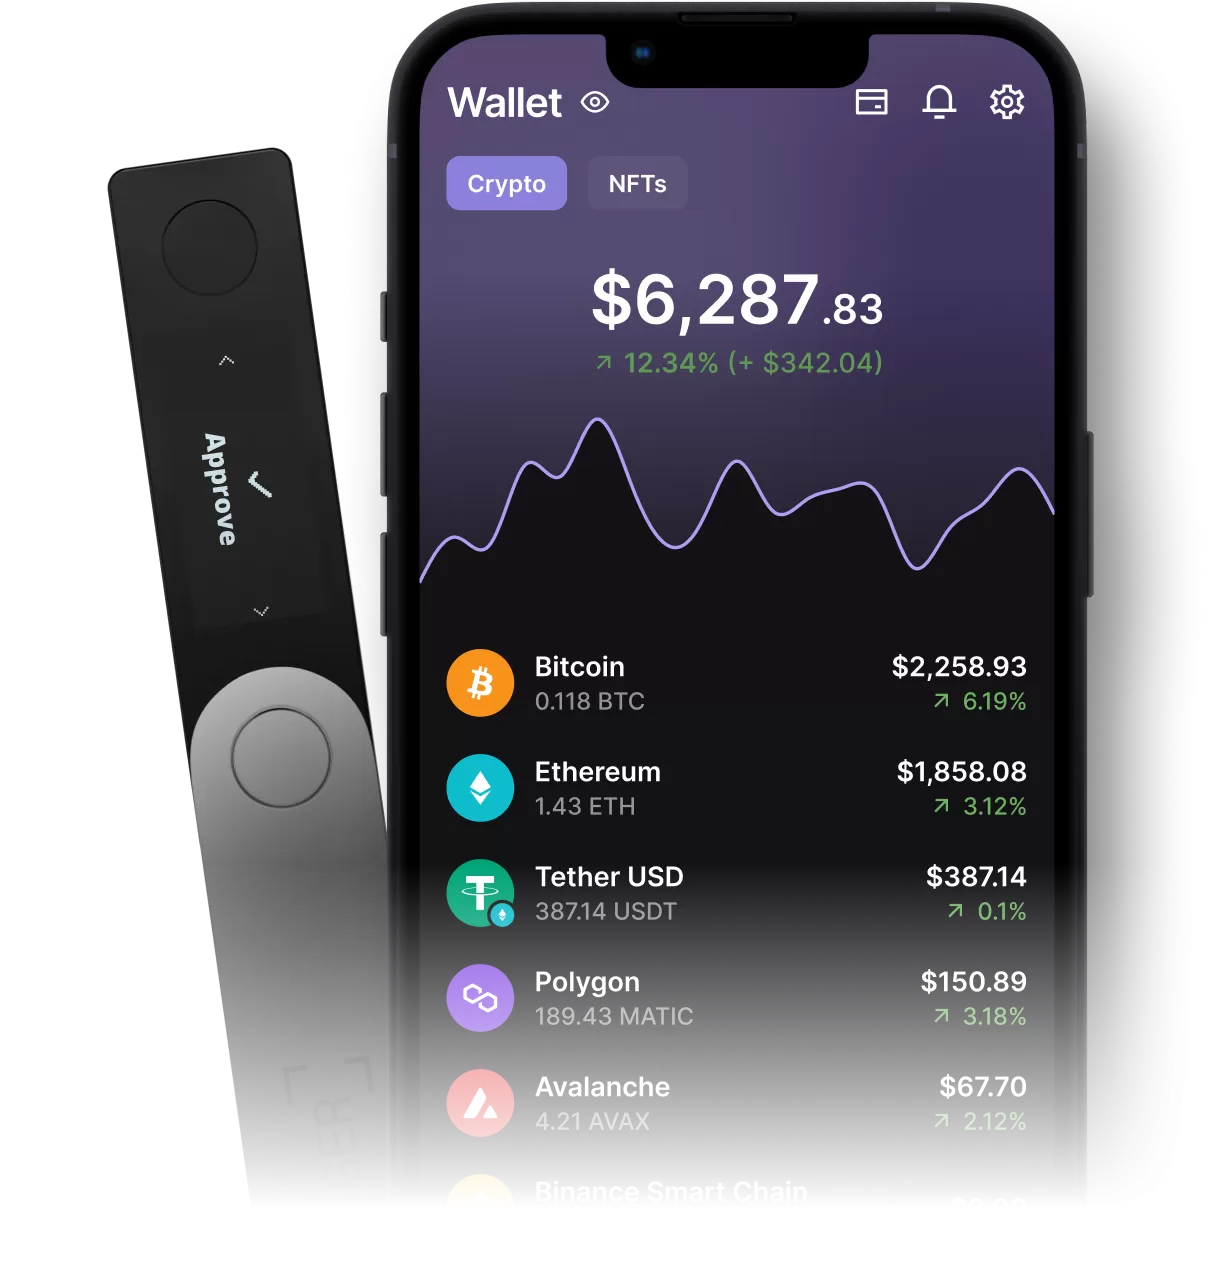 Ledger Live : Most Secure Crypto Wallet App | Ledger